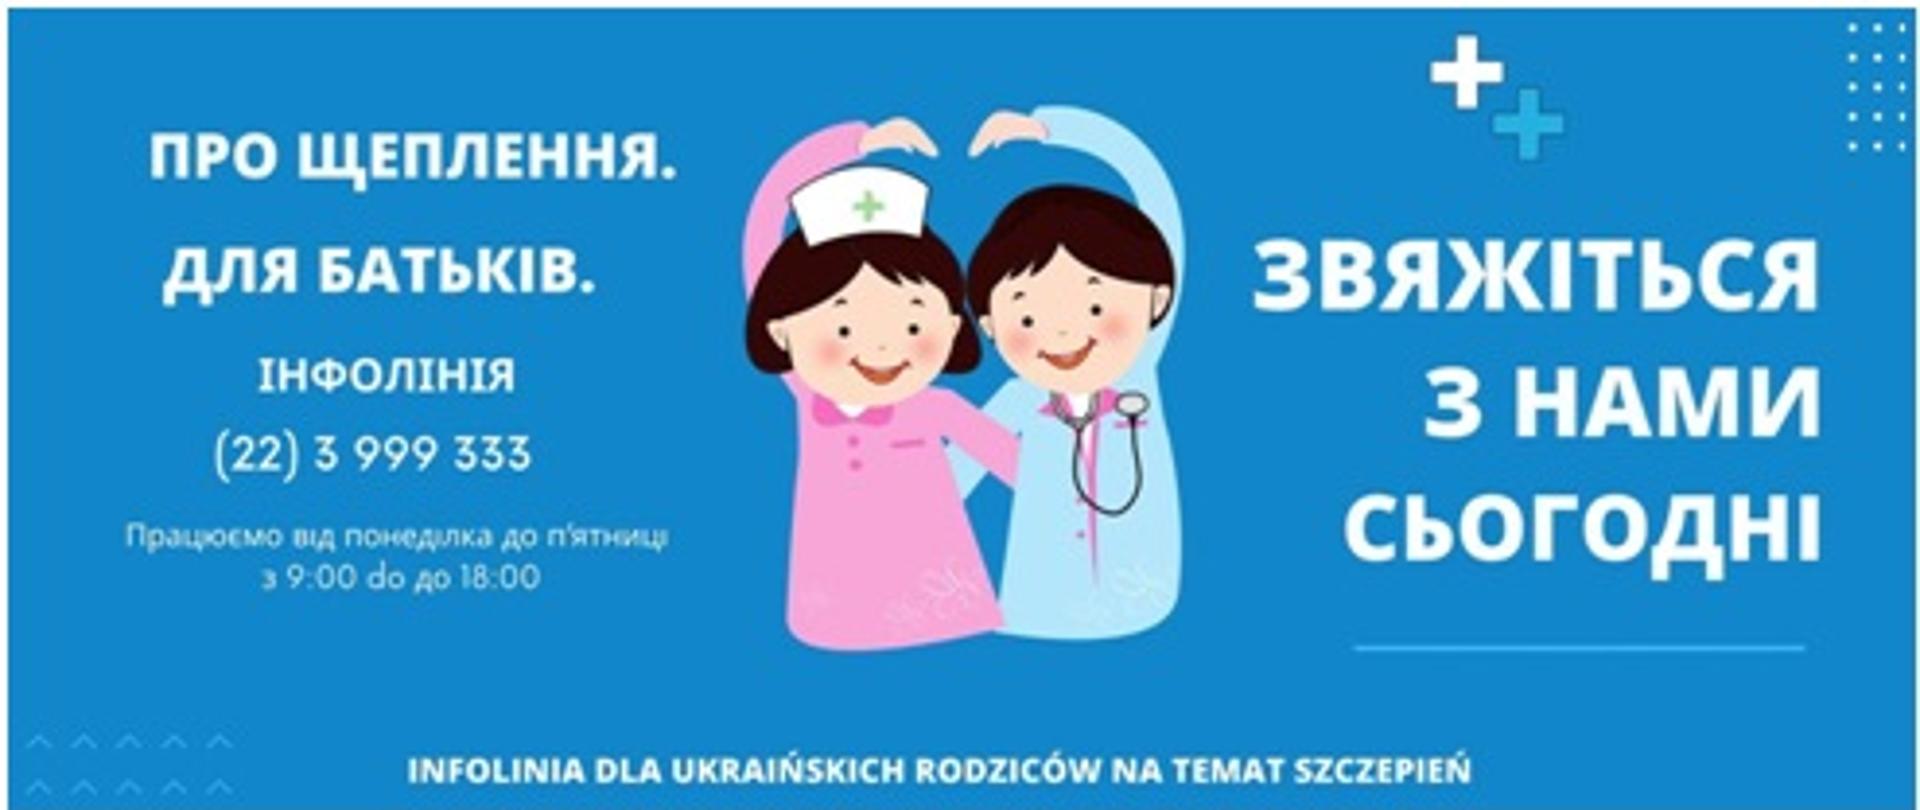 Infolinia dla ukraińskich rodziców na temat szczepień